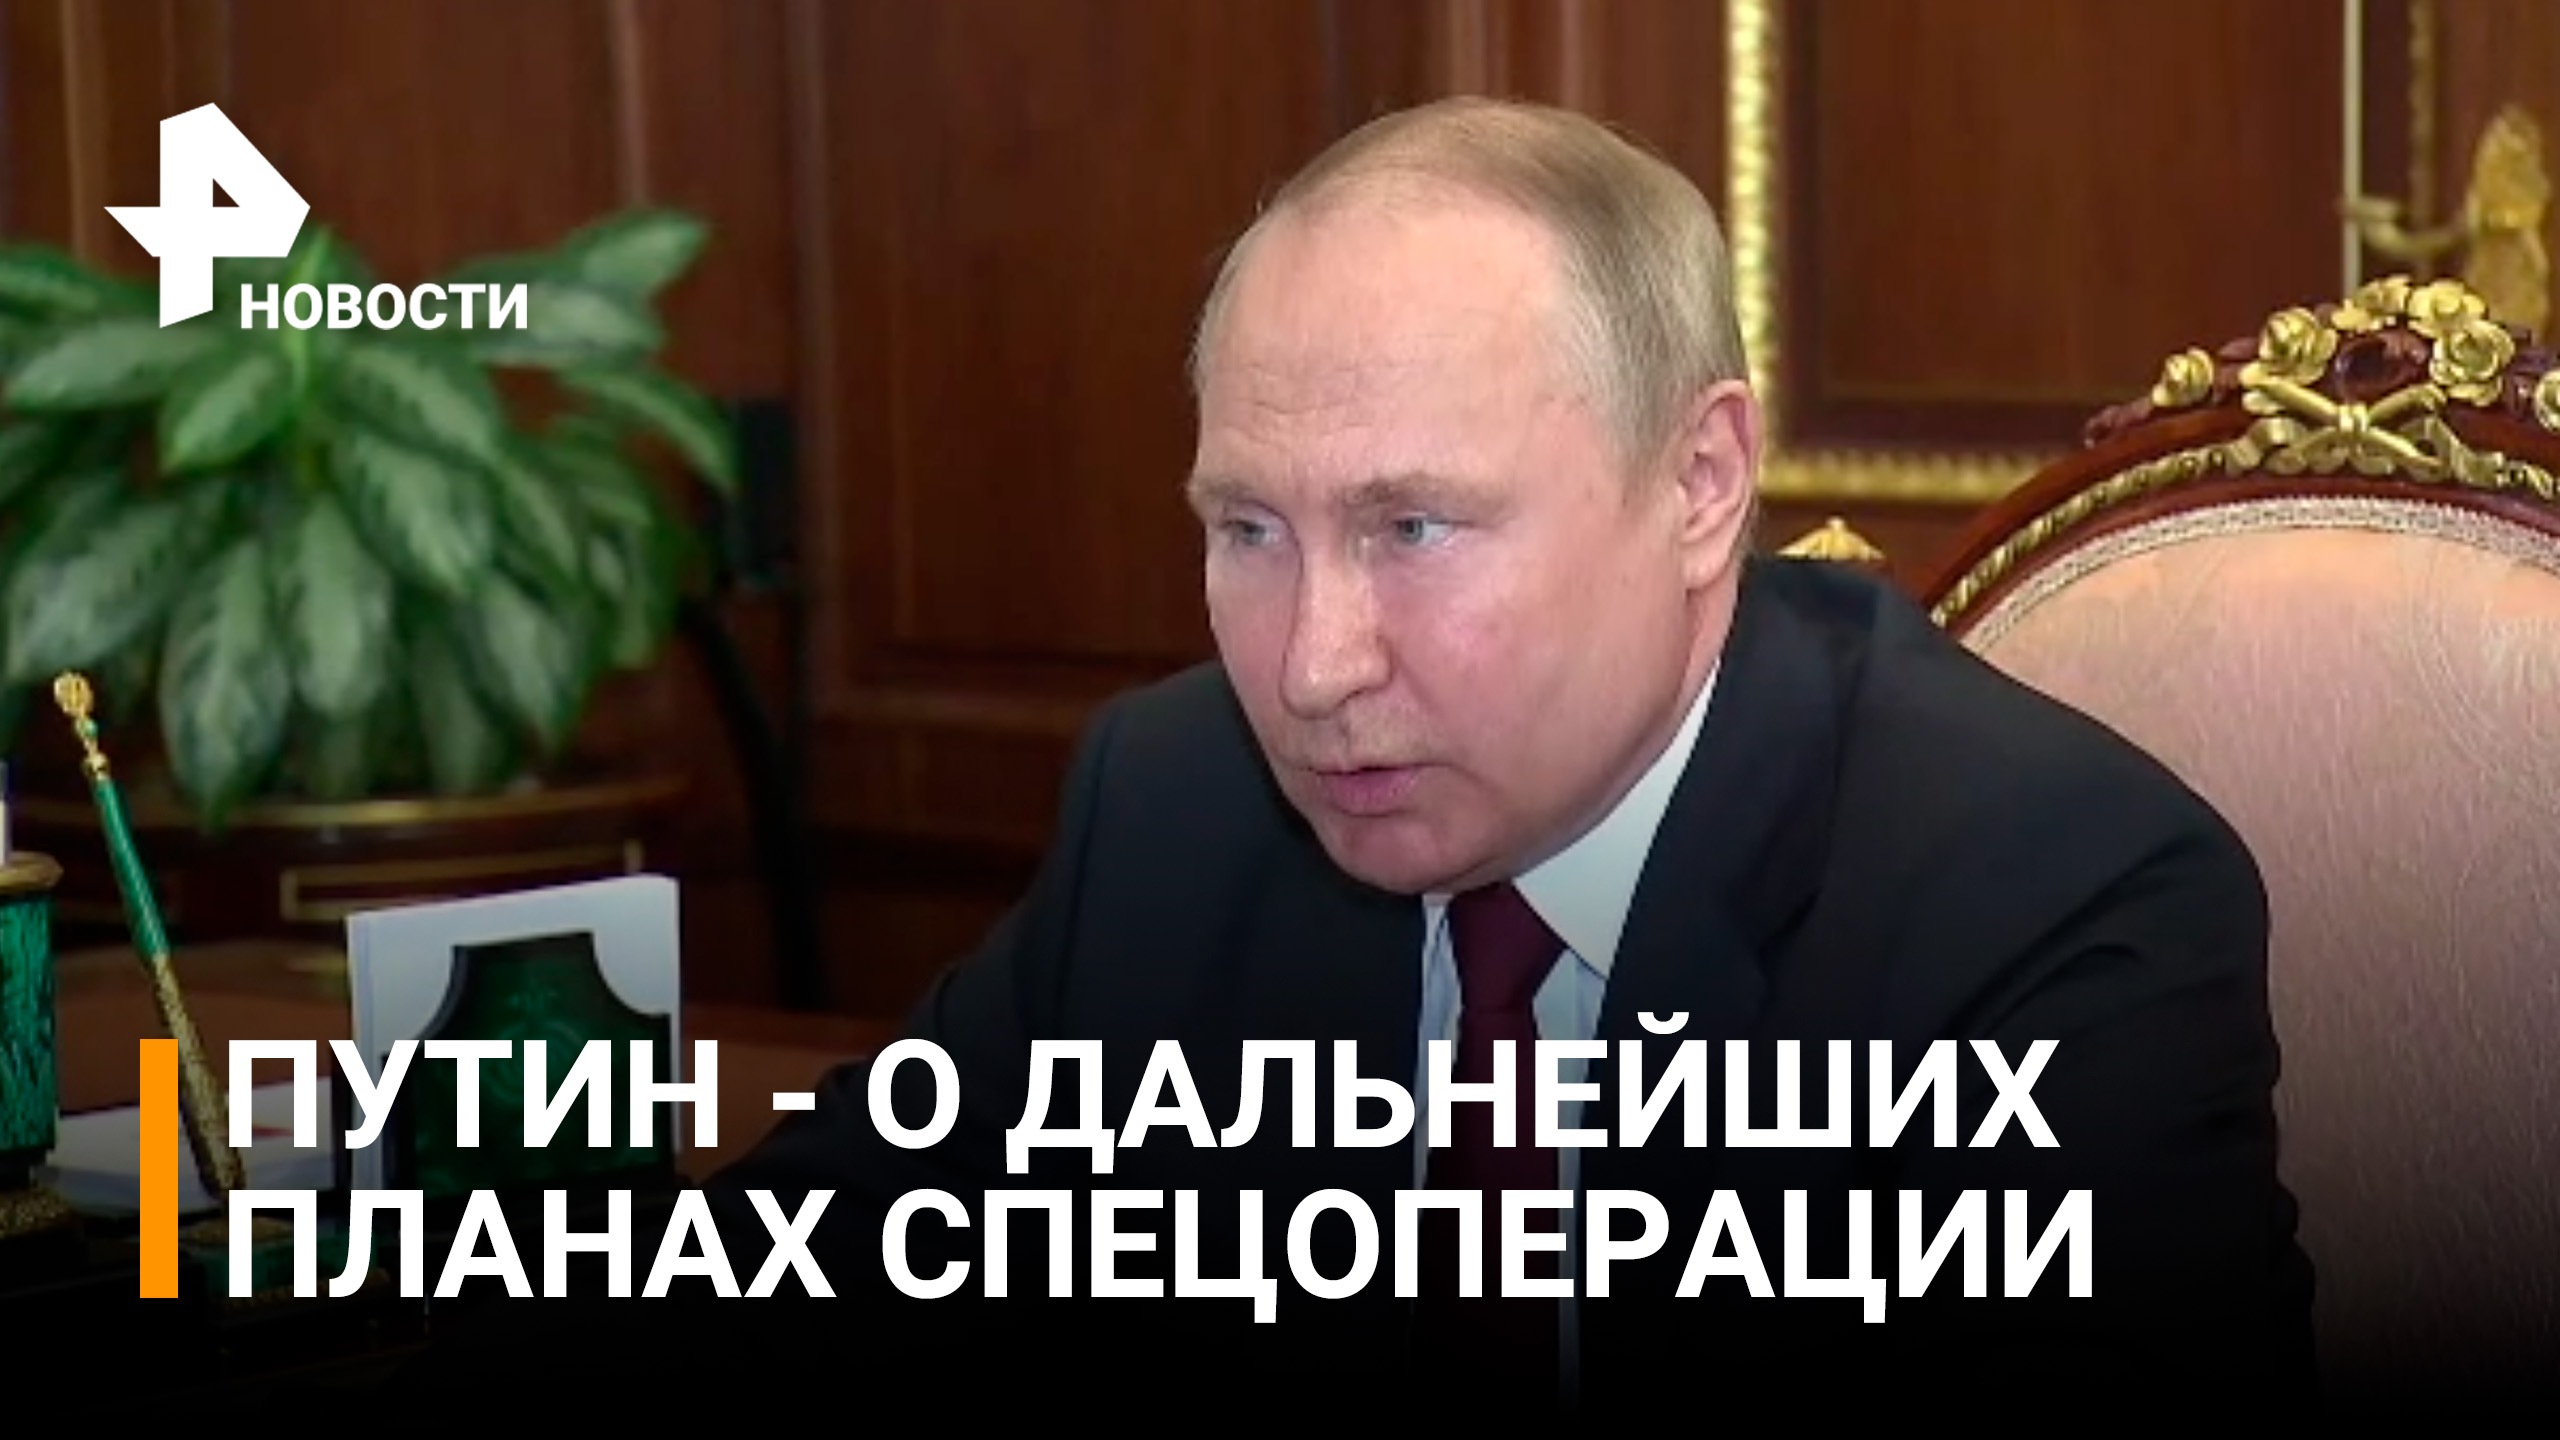 Владимир Путин предложил наградить всех отличившихся участников спецоперации / РЕН Новости